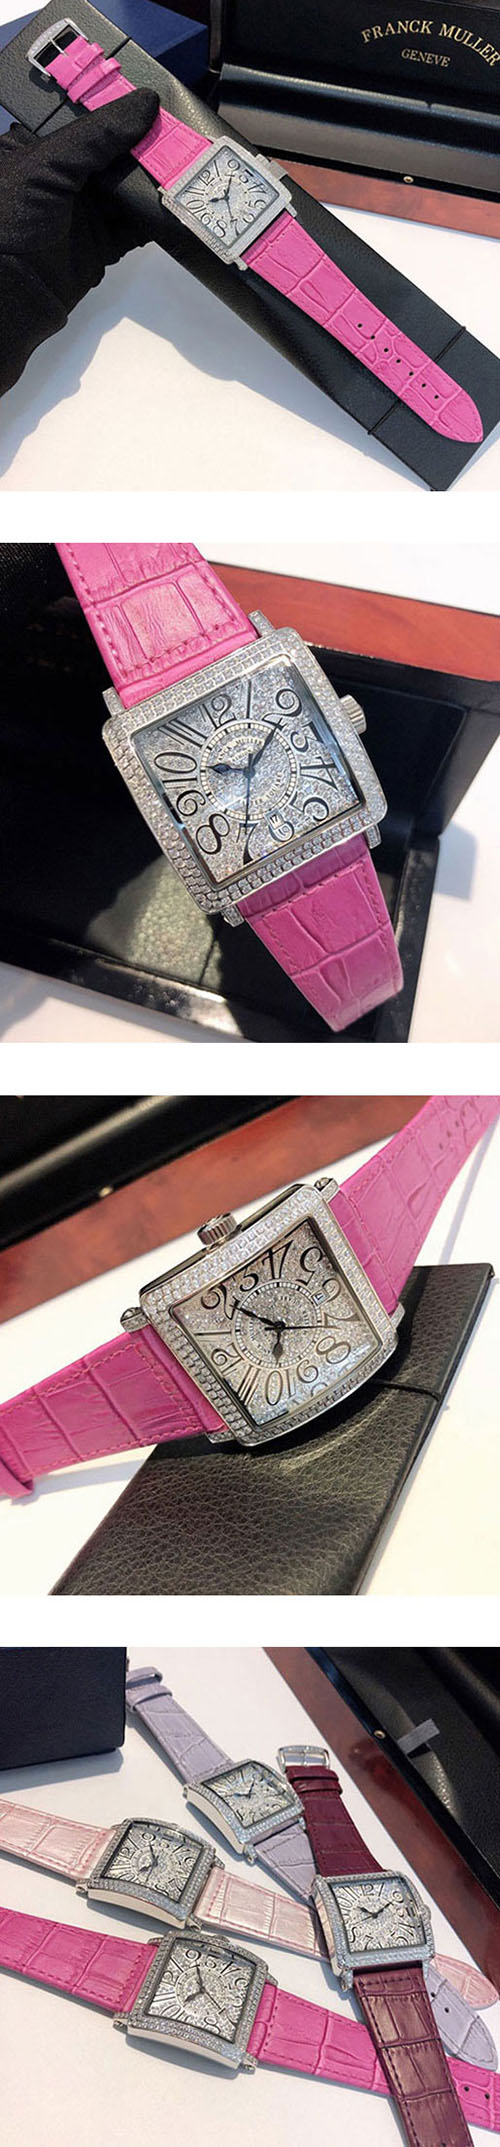 人気新品 FRANCK MULLER コピー時計 レディース クォーツムーブメント搭載 4色 日付表示 全面ダイヤ 革バンド